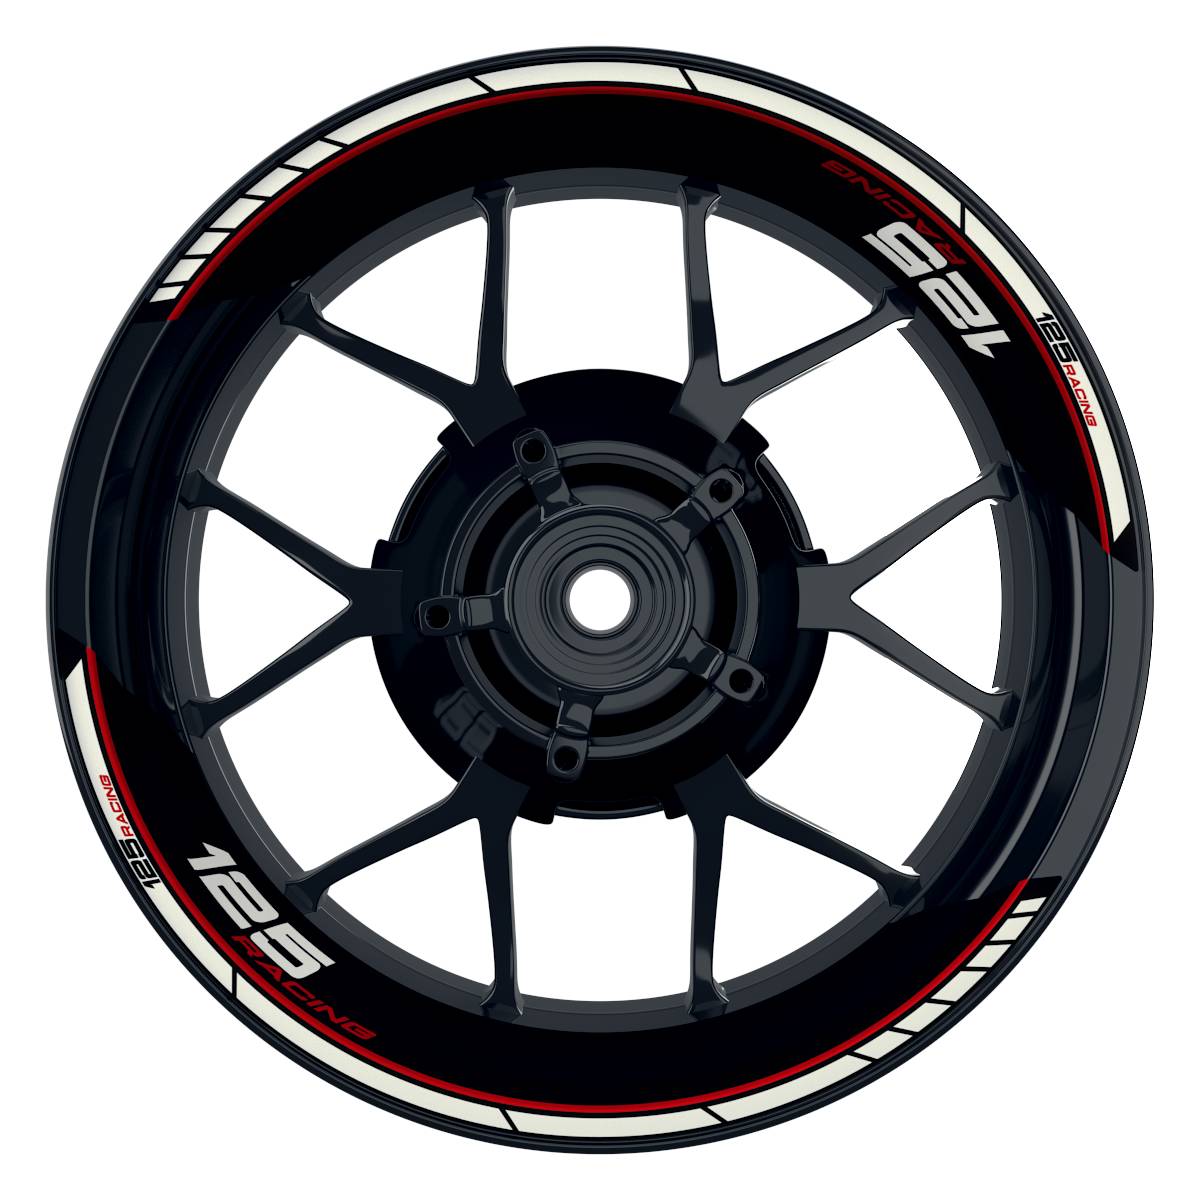 KTM Racing 125 Clean schwarz rot Frontansicht